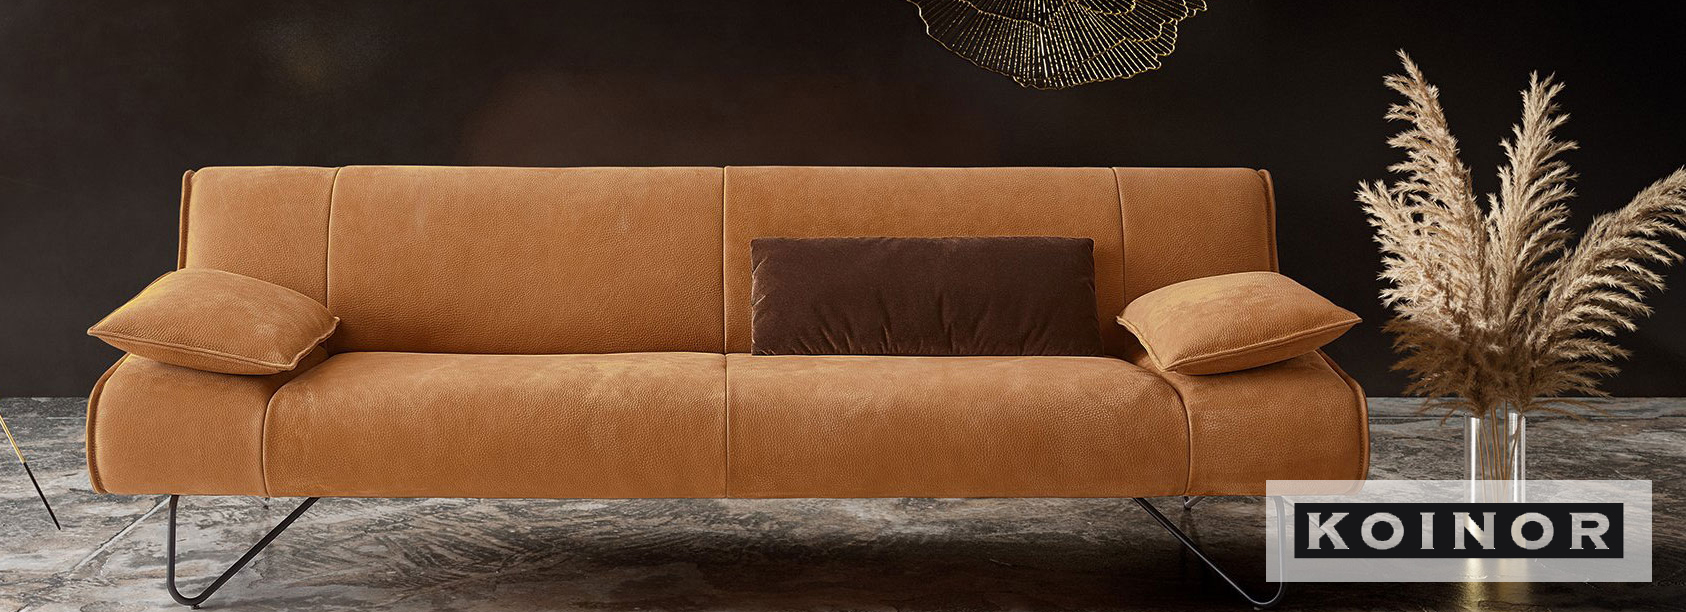 Koinor Sofa das ideale Sitzmöbel für Ihr Wohnzimmer